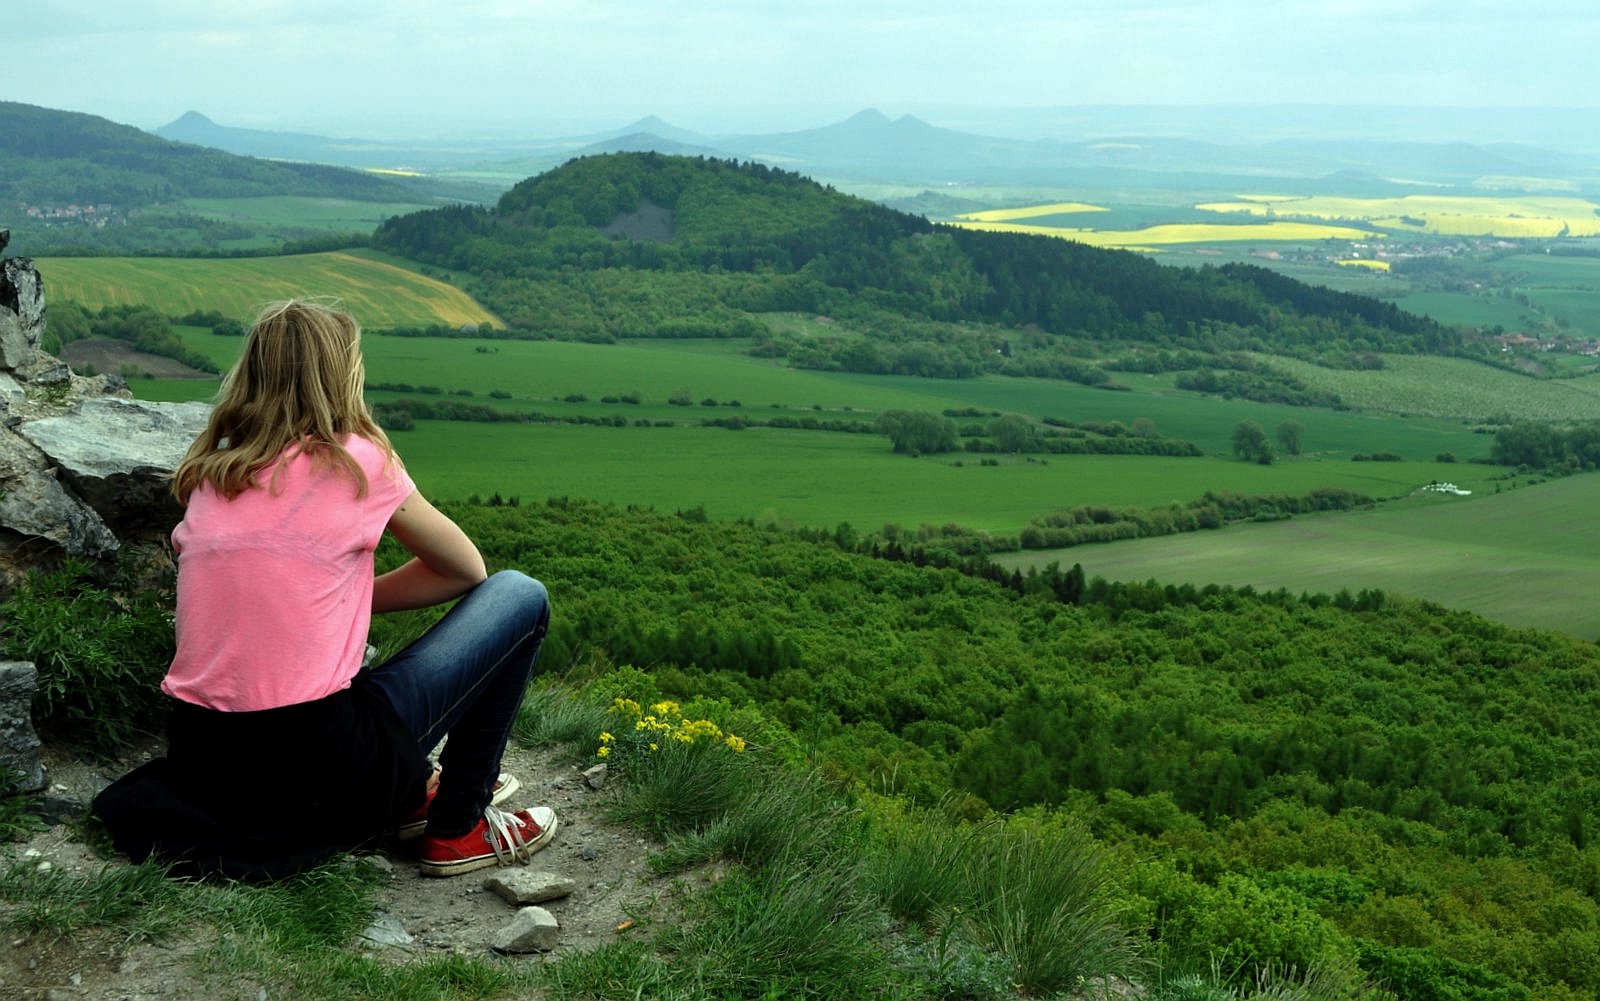 sedící dívka hledící do krajiny, výhled, rozhled, horizont, pole kopce / -ima-